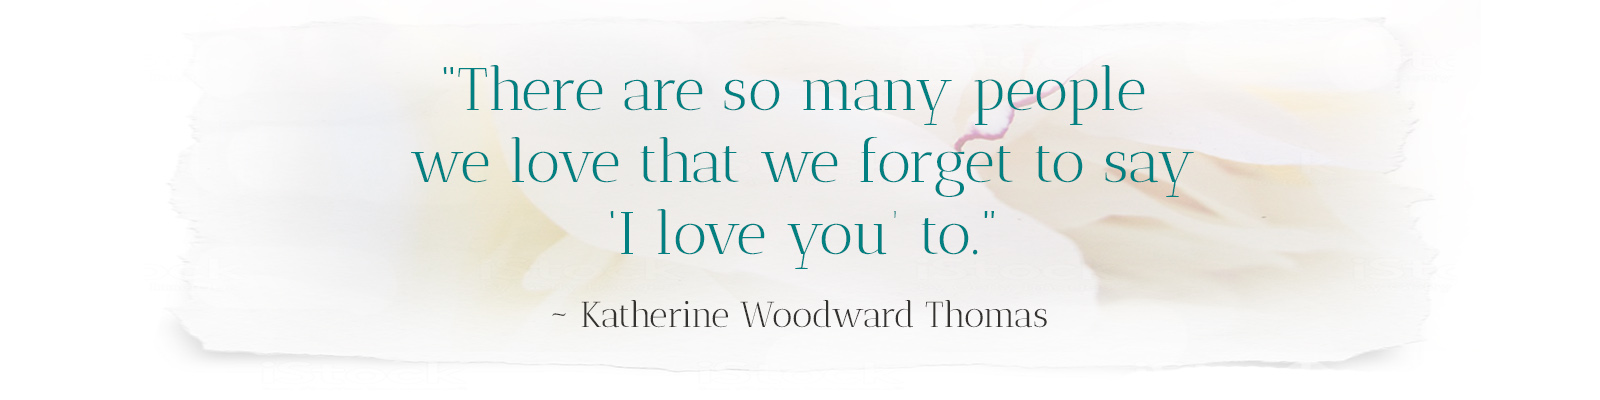 Katherine Woodward Thomas quote